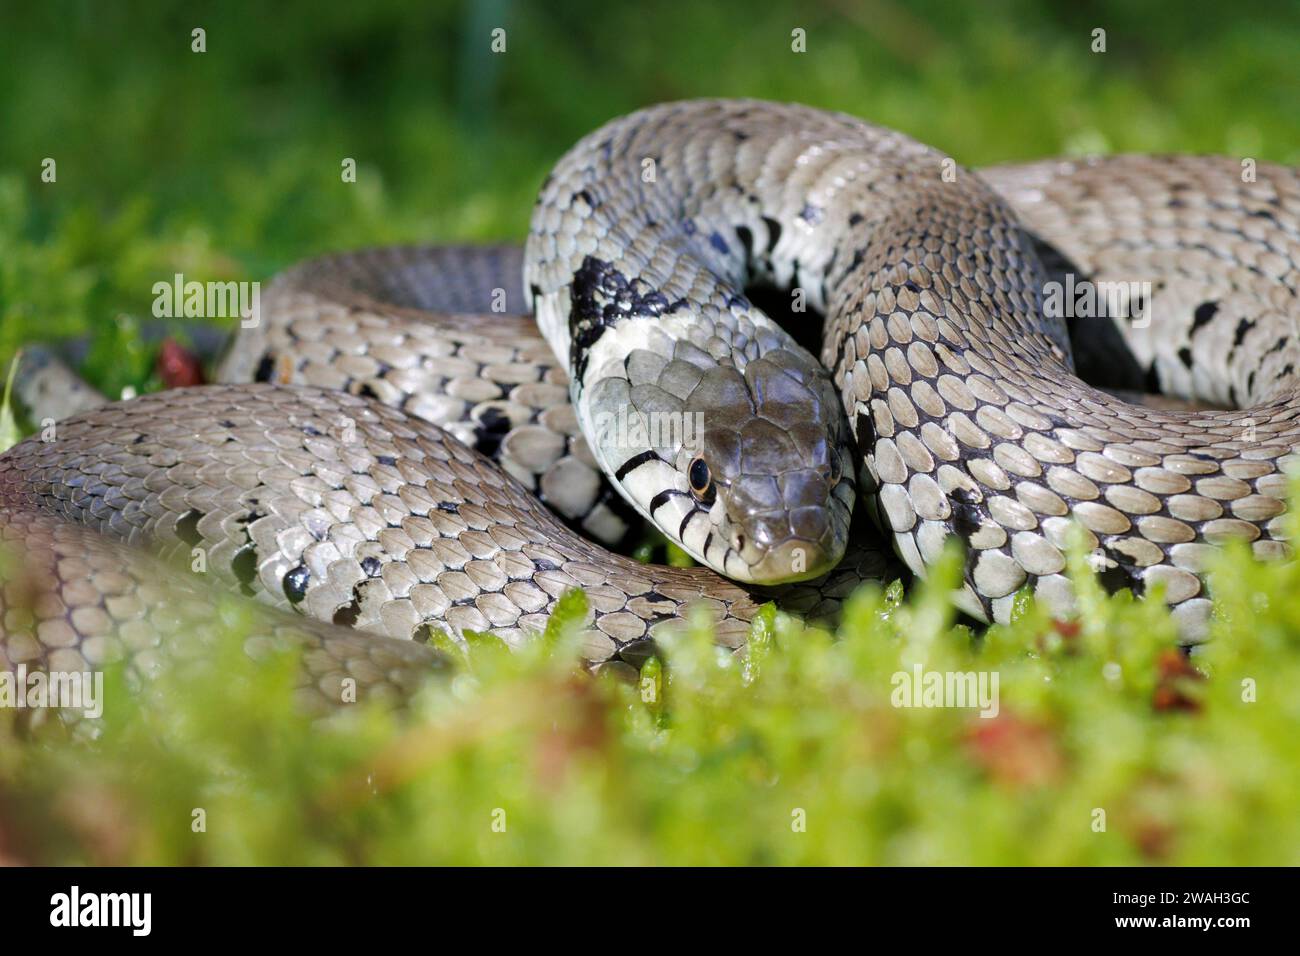 Serpent d'herbe barrée (Natrix natrix helvetica, Natrix helvetica), couché enroulé dans la mousse, regardant vers la caméra, la France, le Mans Banque D'Images